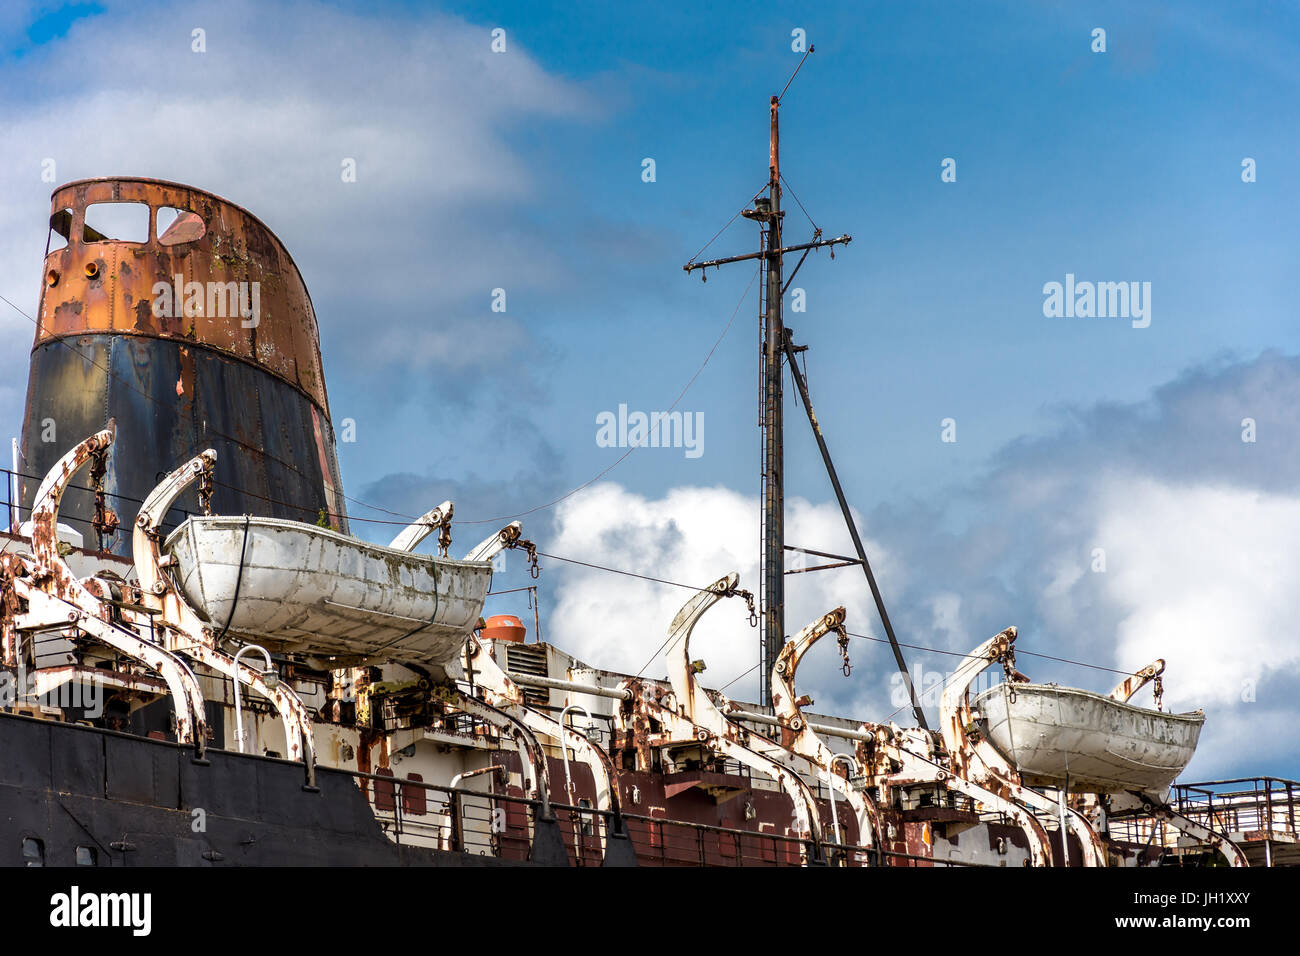 old sailing ship Stock Photo